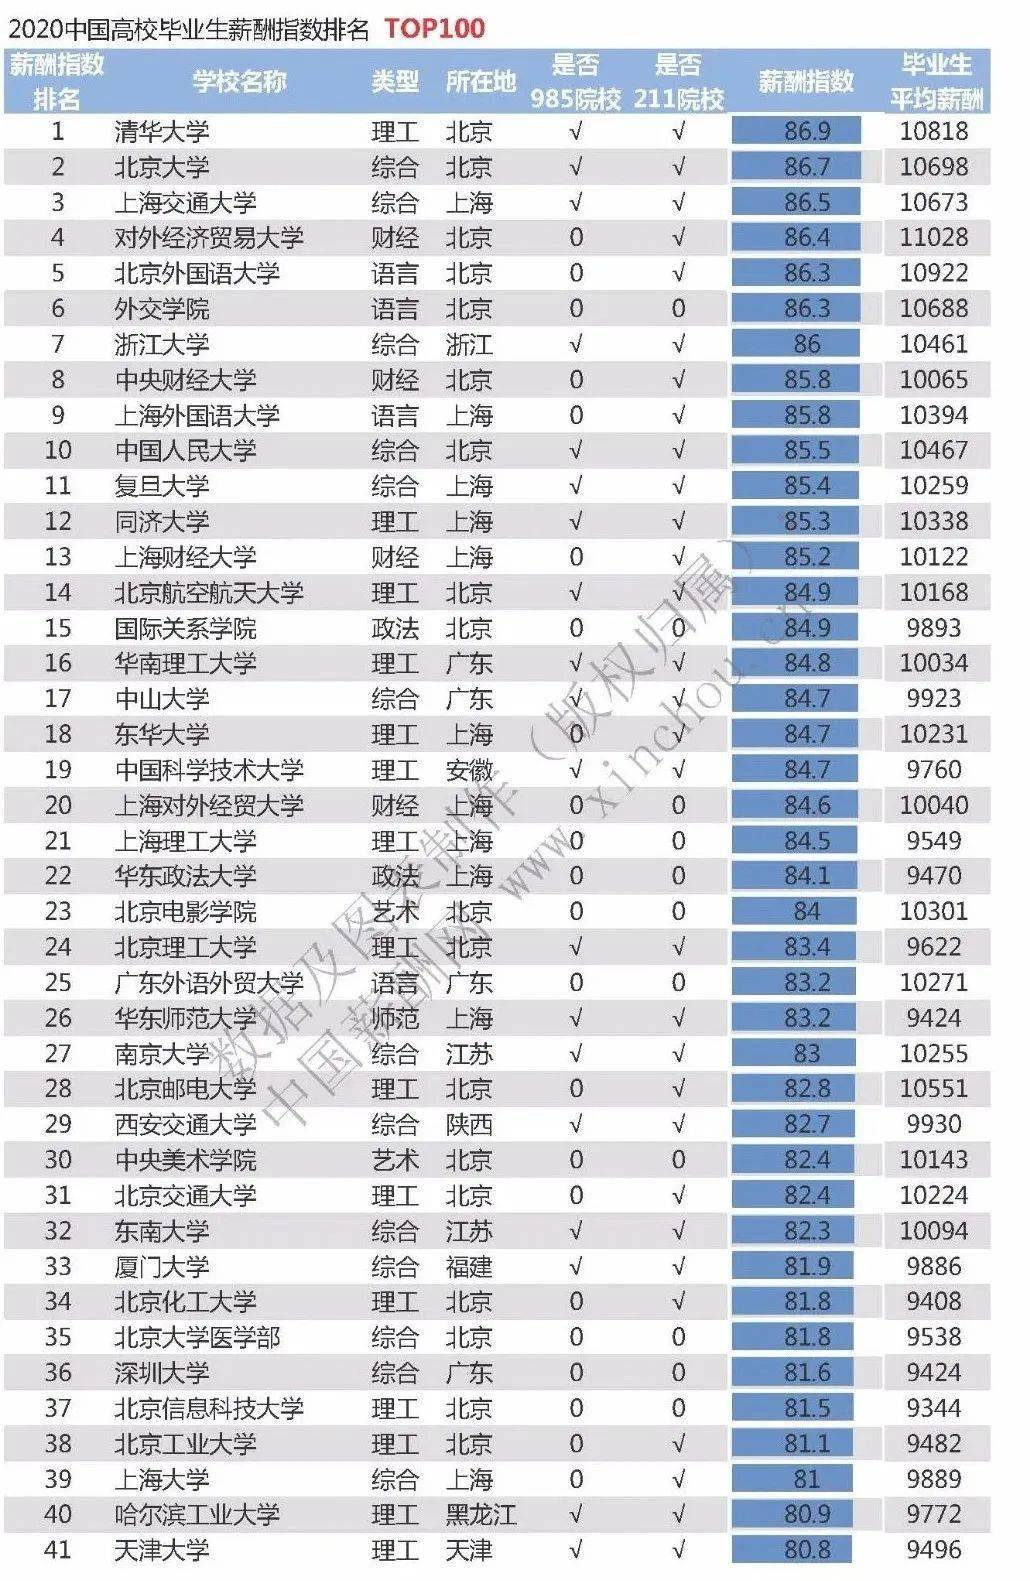 2020中国大学排名前_2020中国最好大学排名新鲜公布,武汉大学挺进前10强